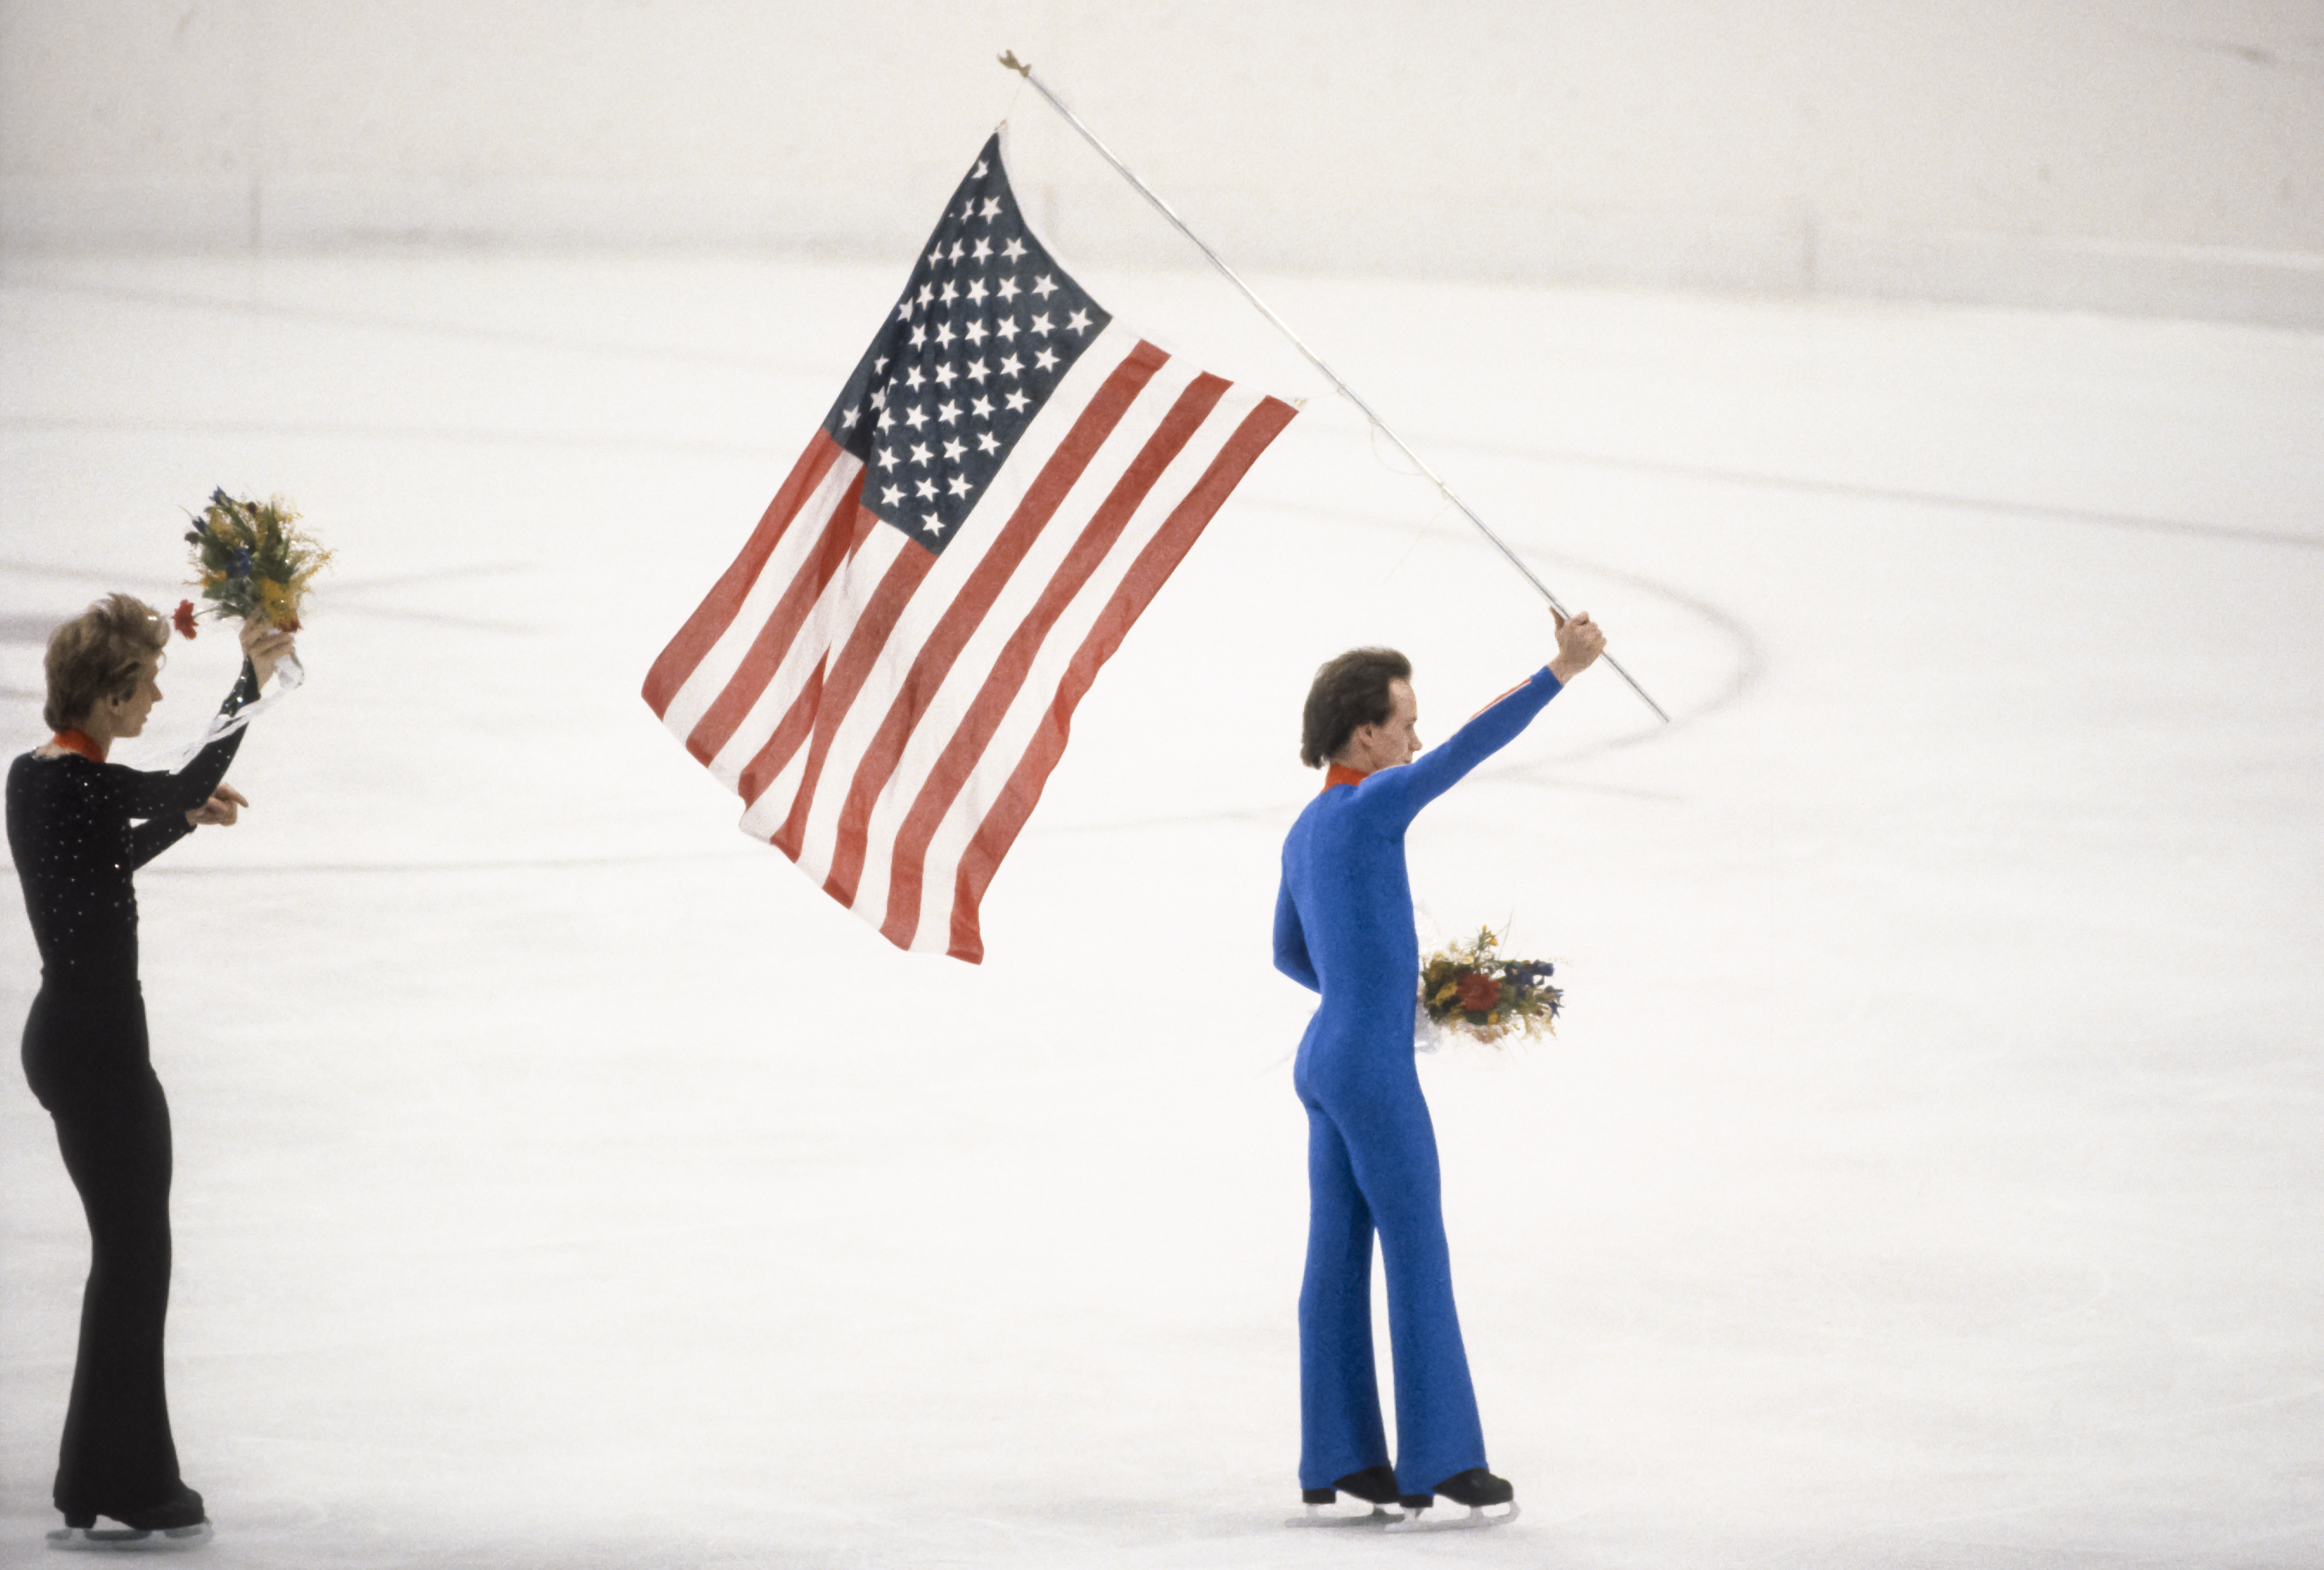 Scott Hamilton (USA) läuft mit der Flagge der USA nach der Medaillenzeremonie des Einzelwettbewerbs der Männer bei den Olympischen Winterspielen 1984 in Sarajevo, Jugoslawien am 16. Februar 1984, übers Eis | Quelle: Getty Images